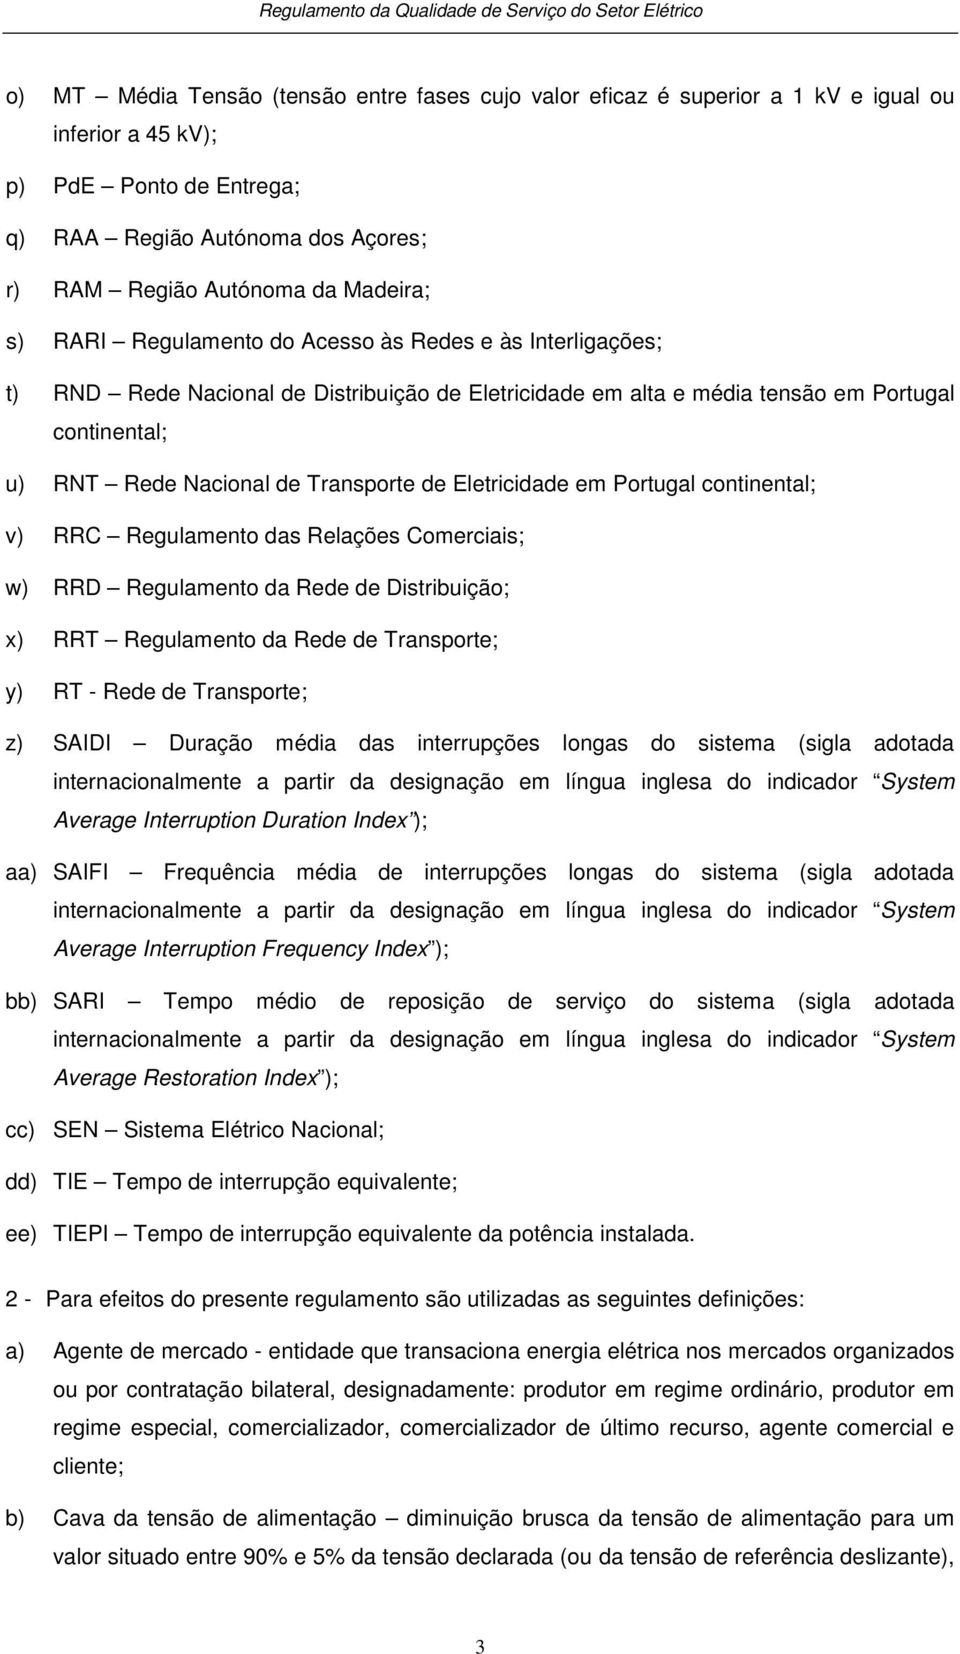 Eletricidade em Portugal continental; v) RRC Regulamento das Relações Comerciais; w) RRD Regulamento da Rede de Distribuição; x) RRT Regulamento da Rede de Transporte; y) RT - Rede de Transporte; z)